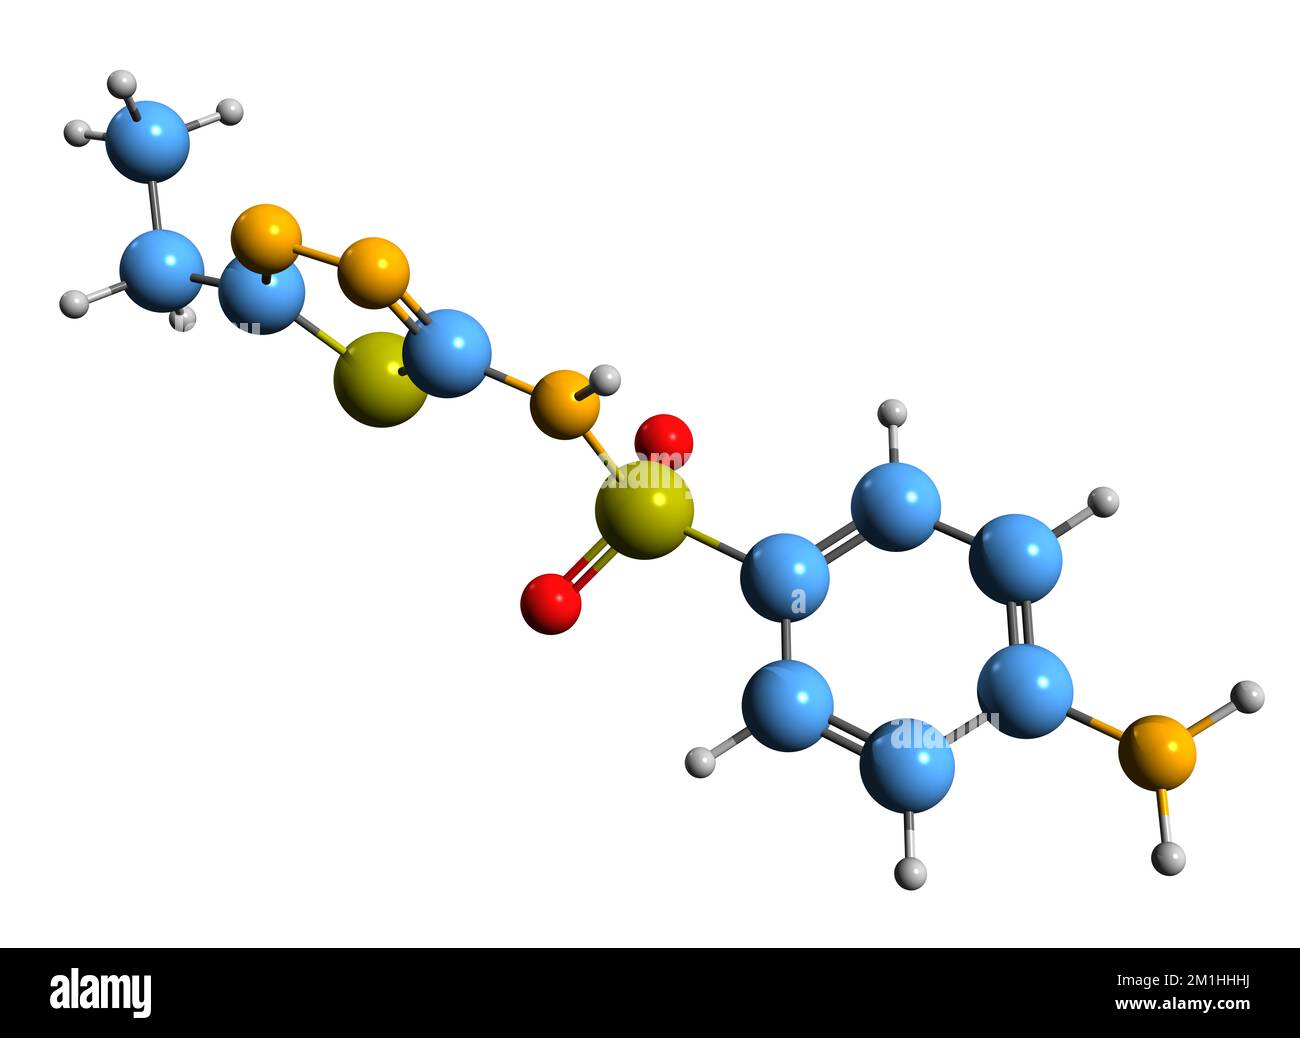 3D-Bild einer Sulfaethidol-Skelettformel - molekularchemische Struktur des auf weißem Hintergrund isolierten Sulfonamids Stockfoto